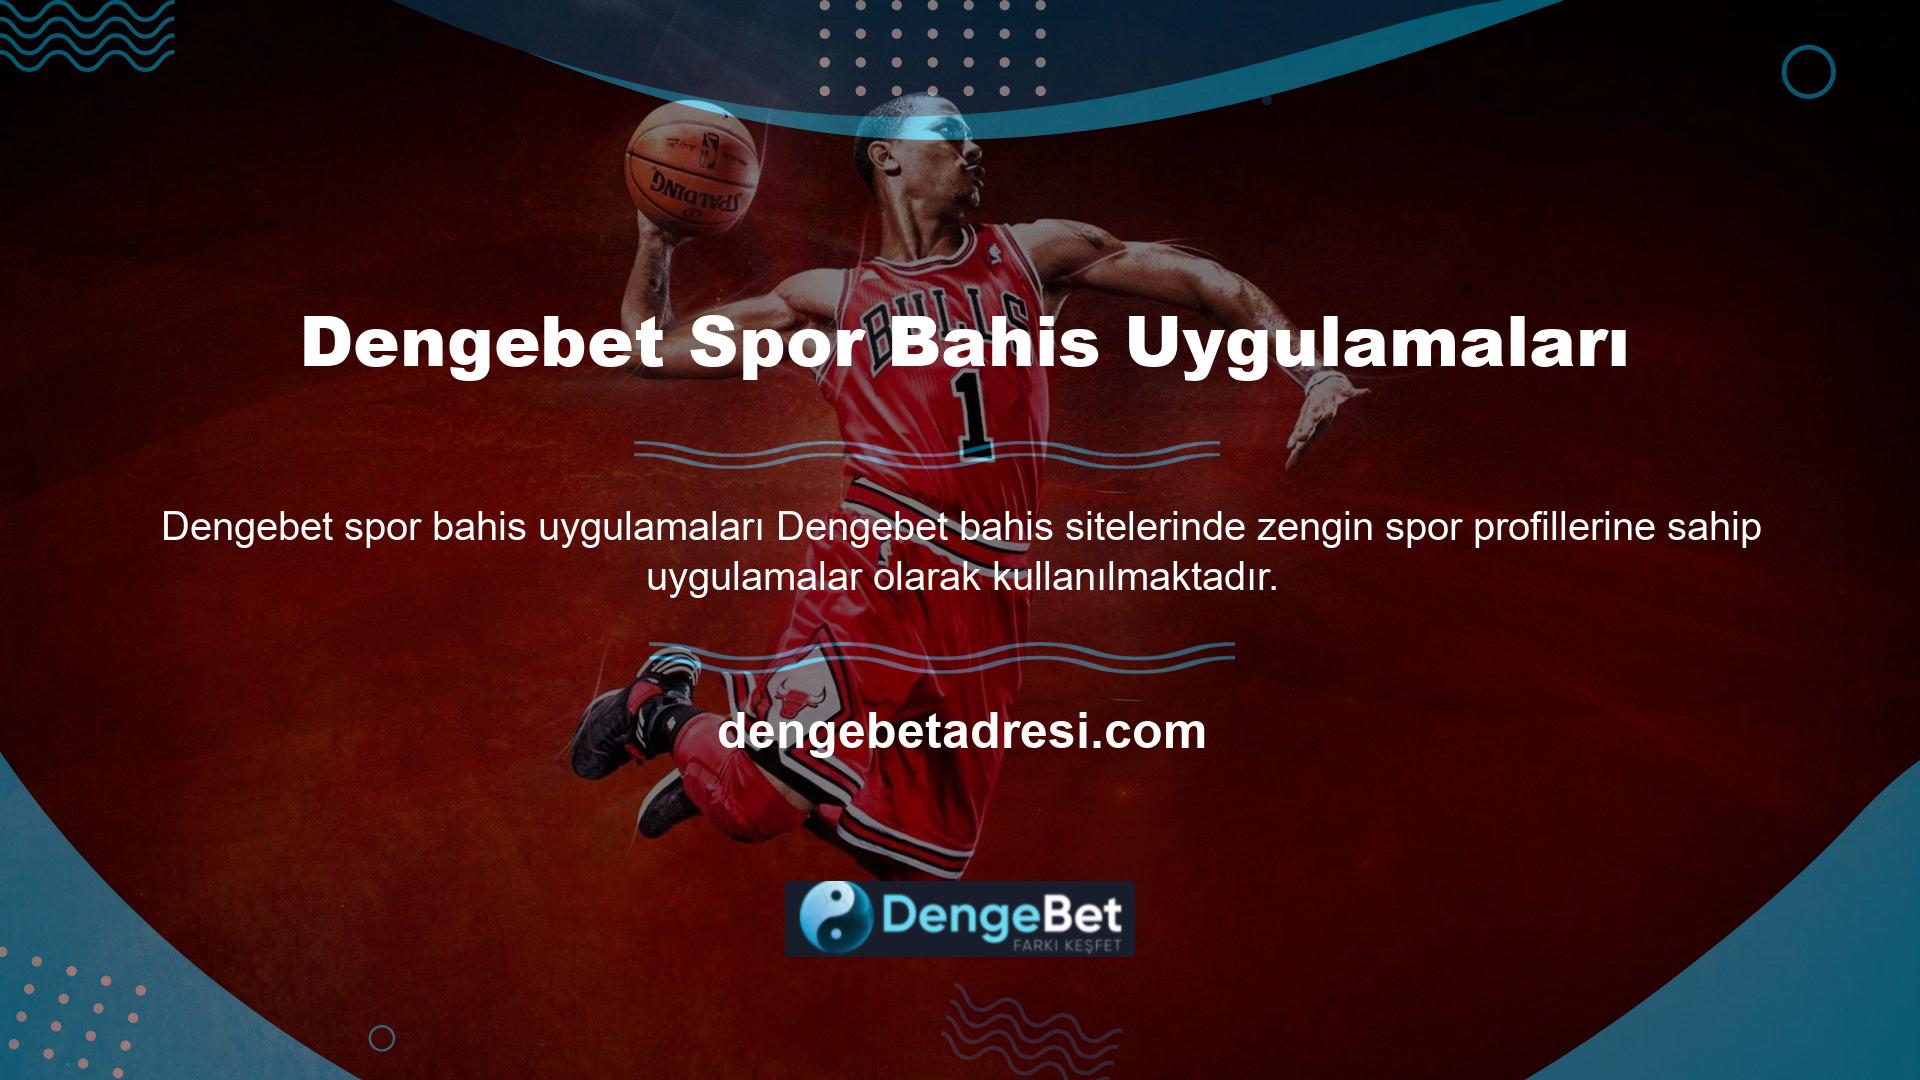 Spor bölümü sayesinde site her kullanıcıya makul bir spor seçeneği sunabilmektedir